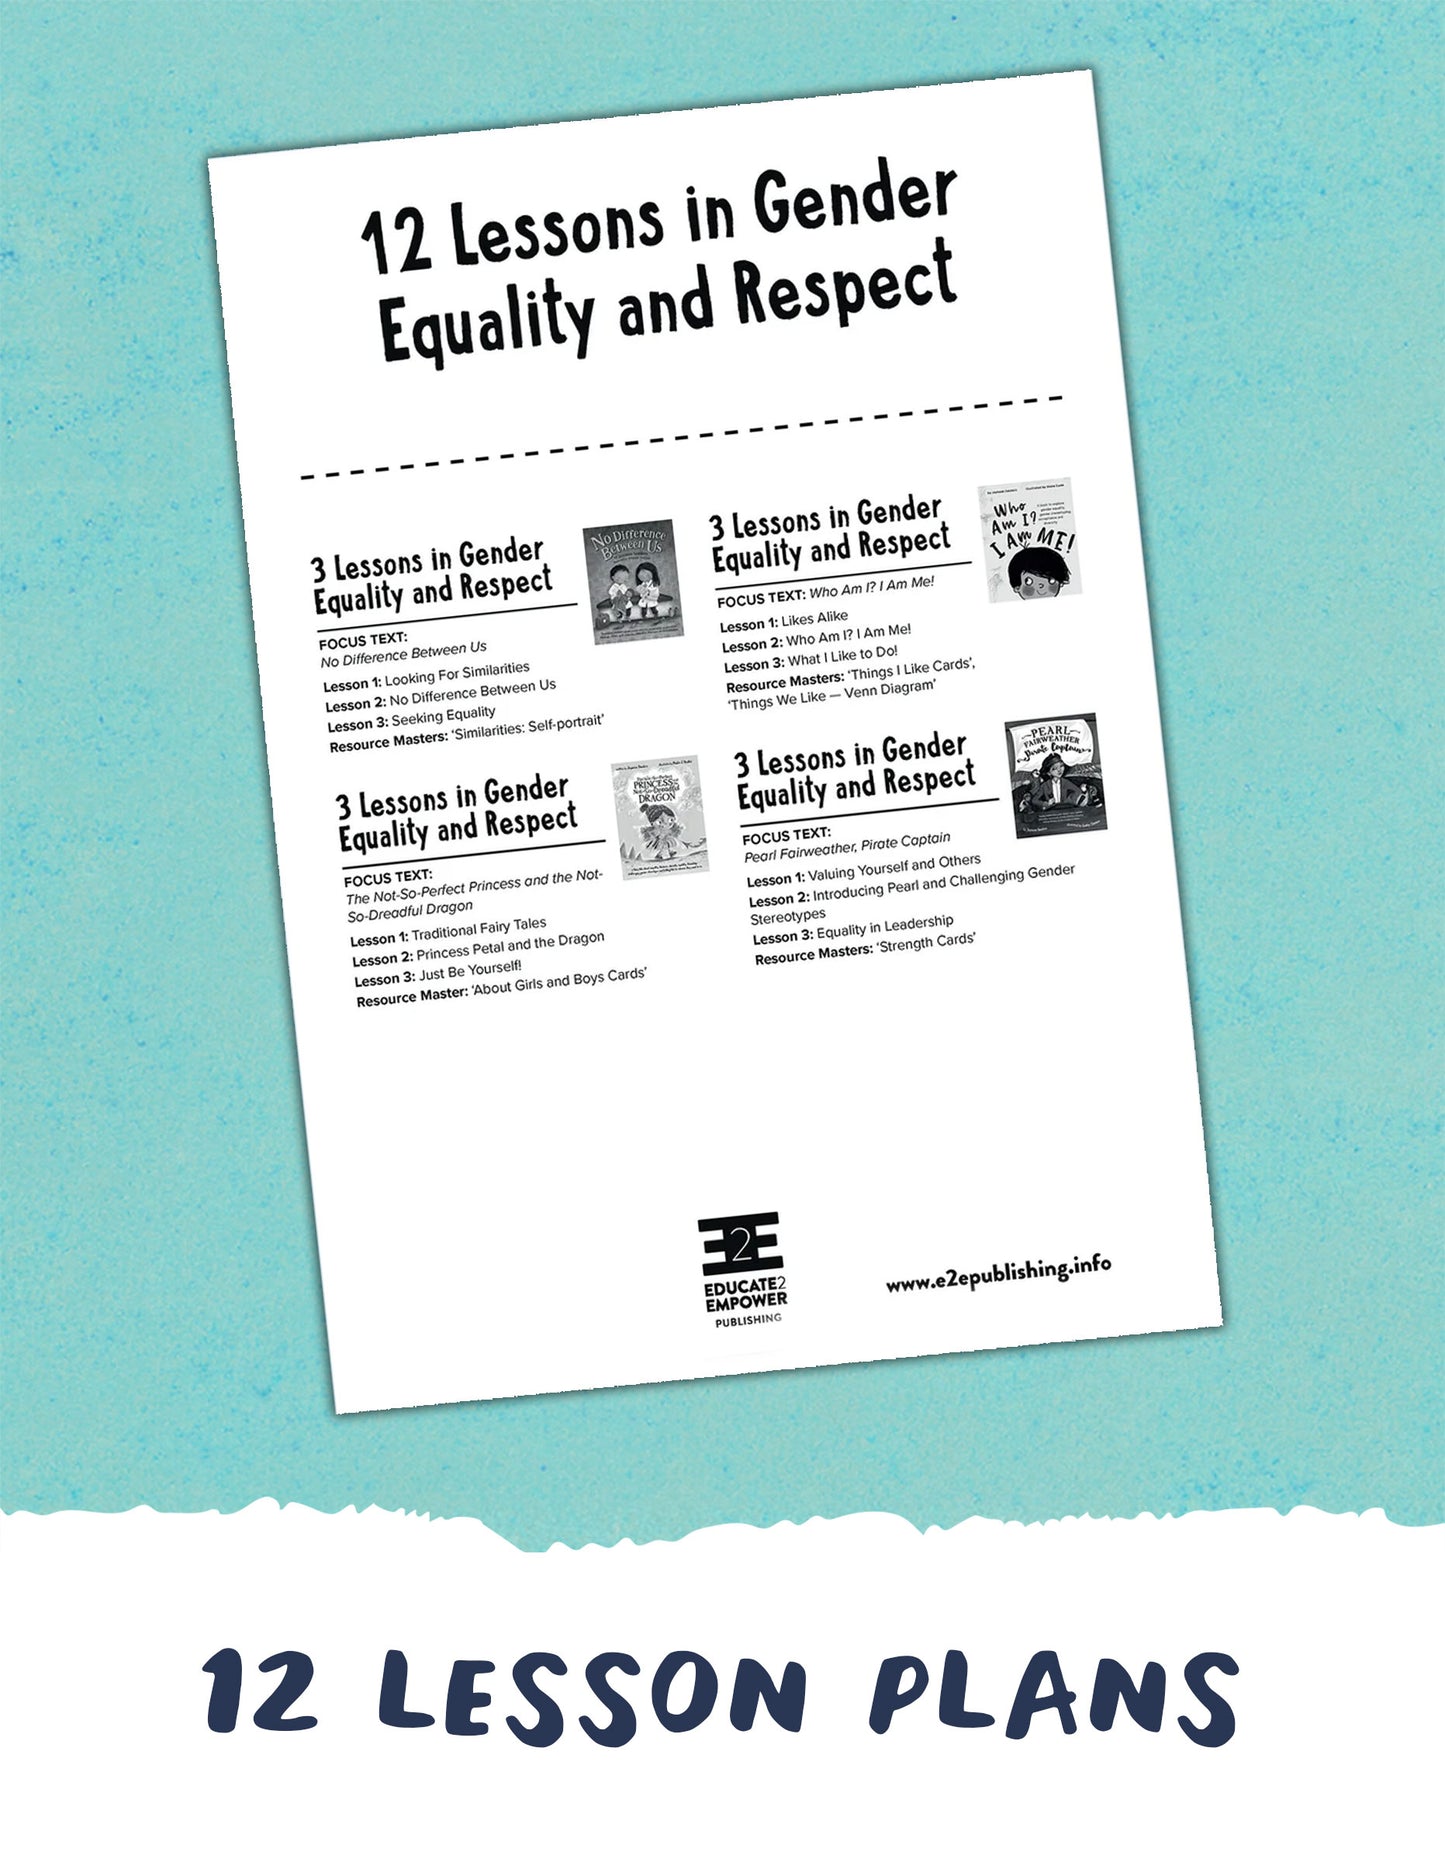 Gender Equality & Respect VALUE BUNDLE Lesson Plan